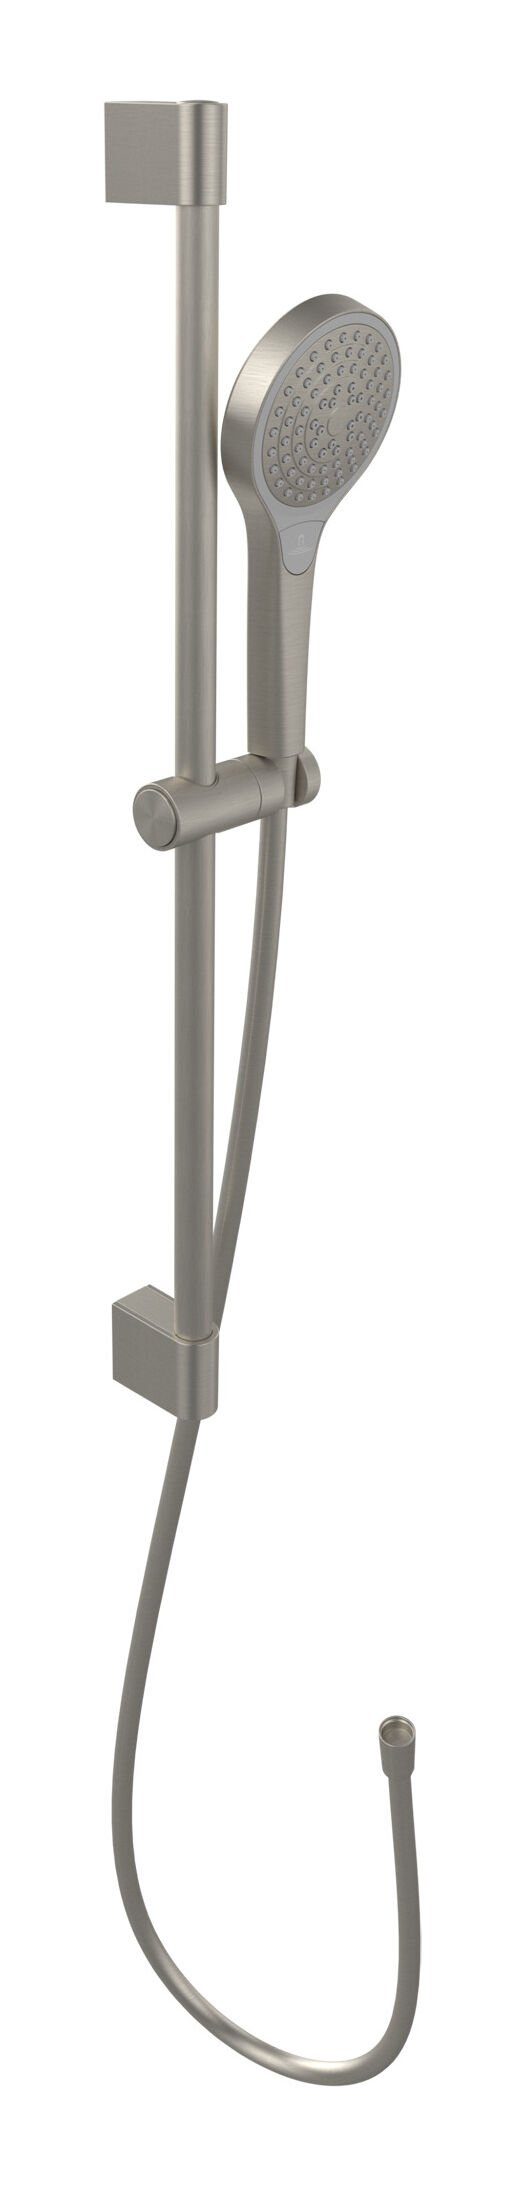 Villeroy & Boch Duschsystem Verve Showers, Höhe 69 cm, 3 Strahlart(en), Duschgarnitur mit drei Strahlarten - Brushed Nickel Matt